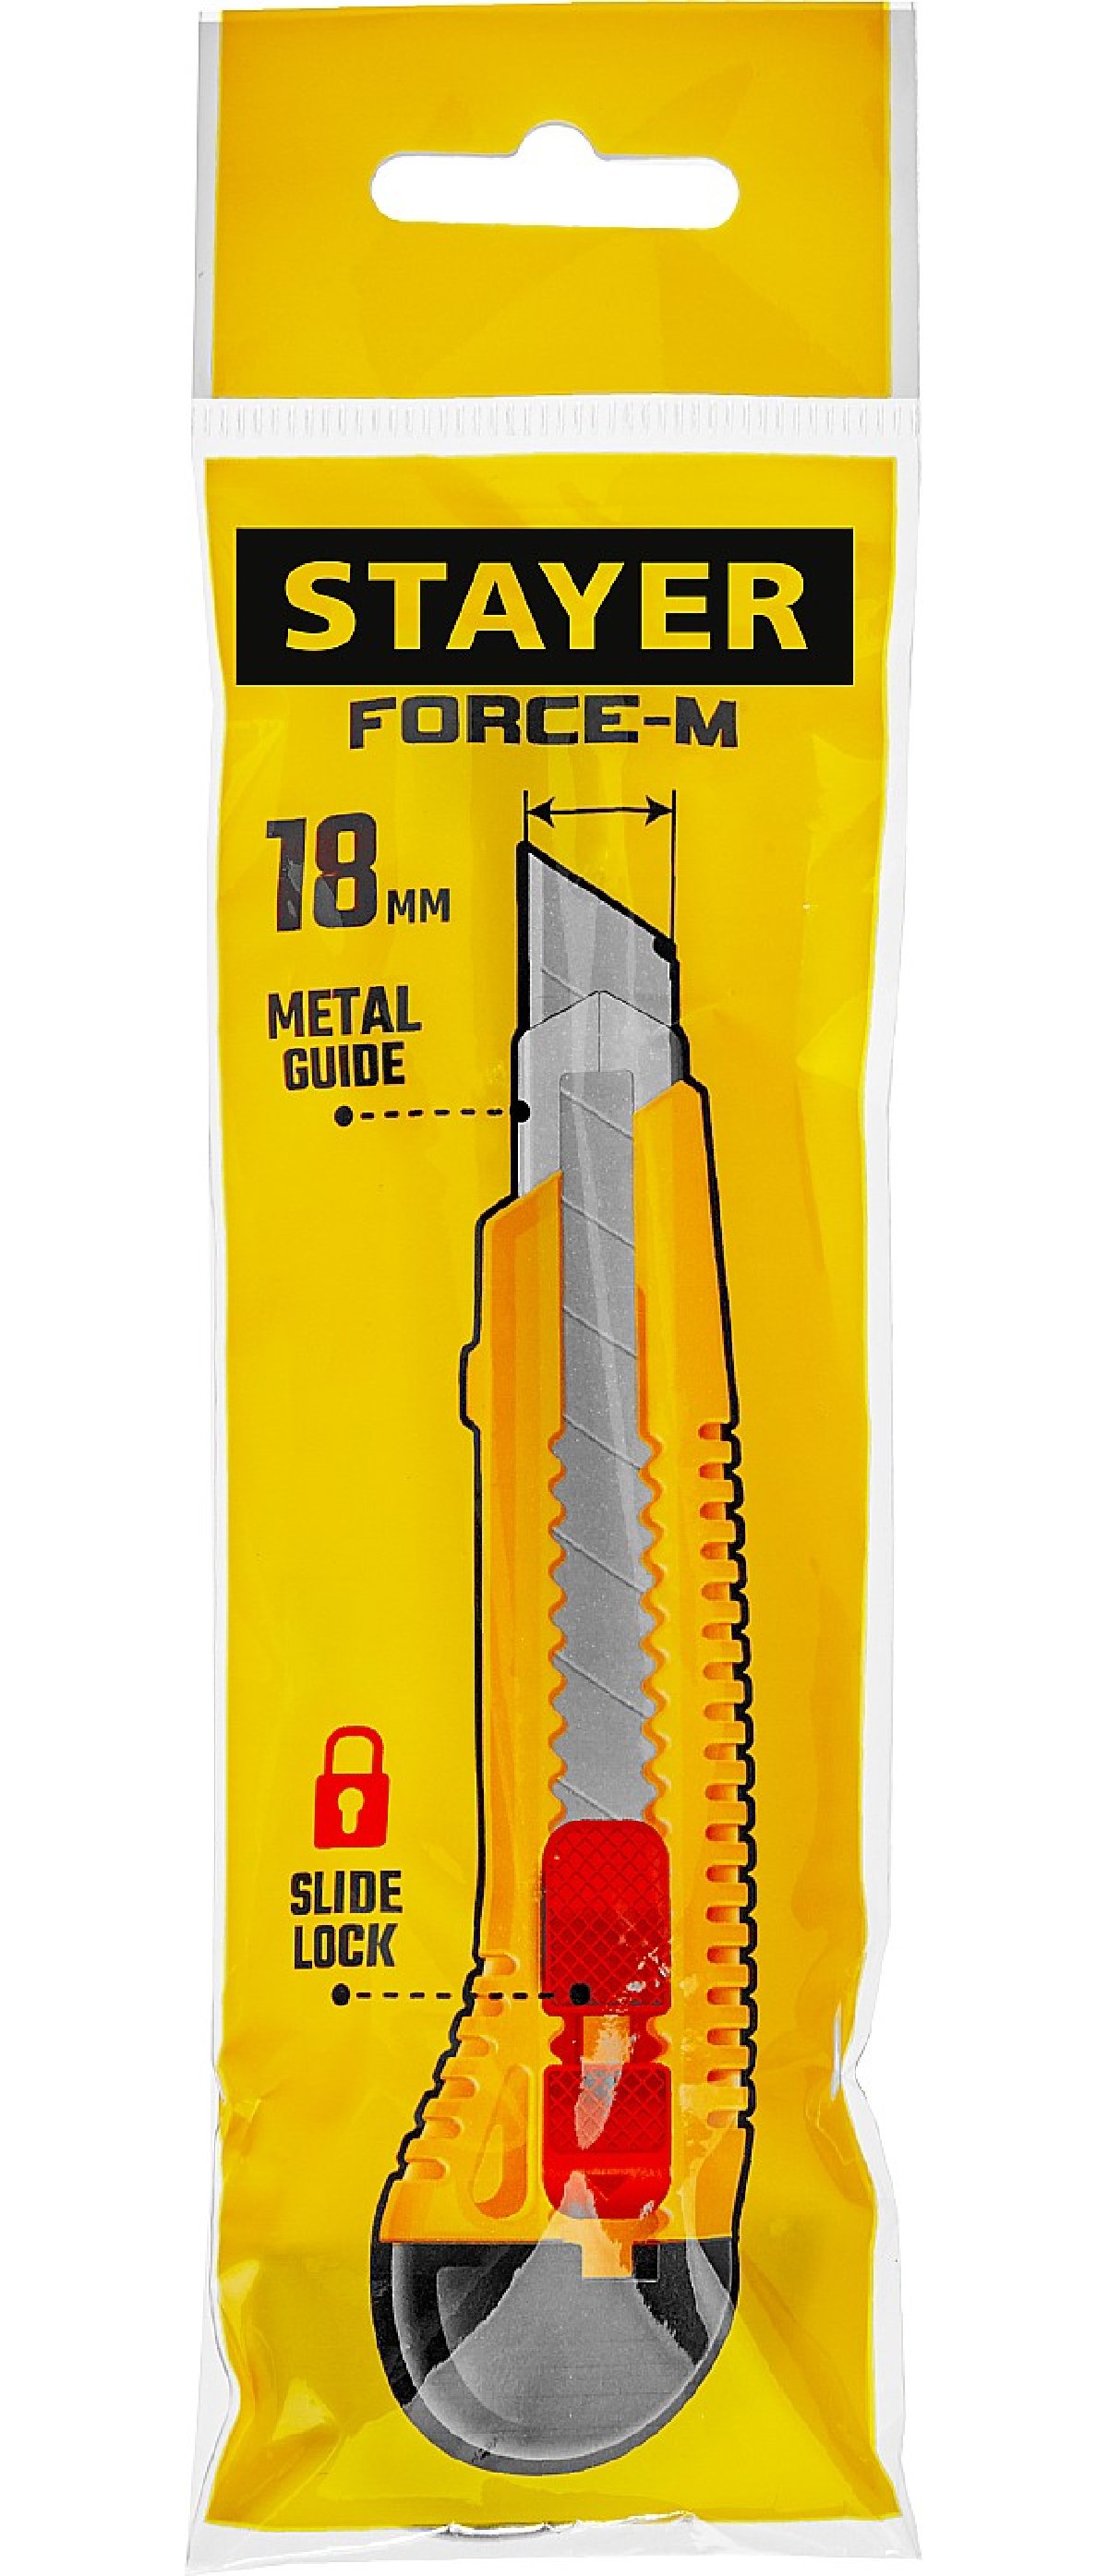 Нож упрочненный с метал. направляющей и сдвижным фиксатором FORCE-M, сегмент. лезвия 18 мм, STAYER (0913_z01)